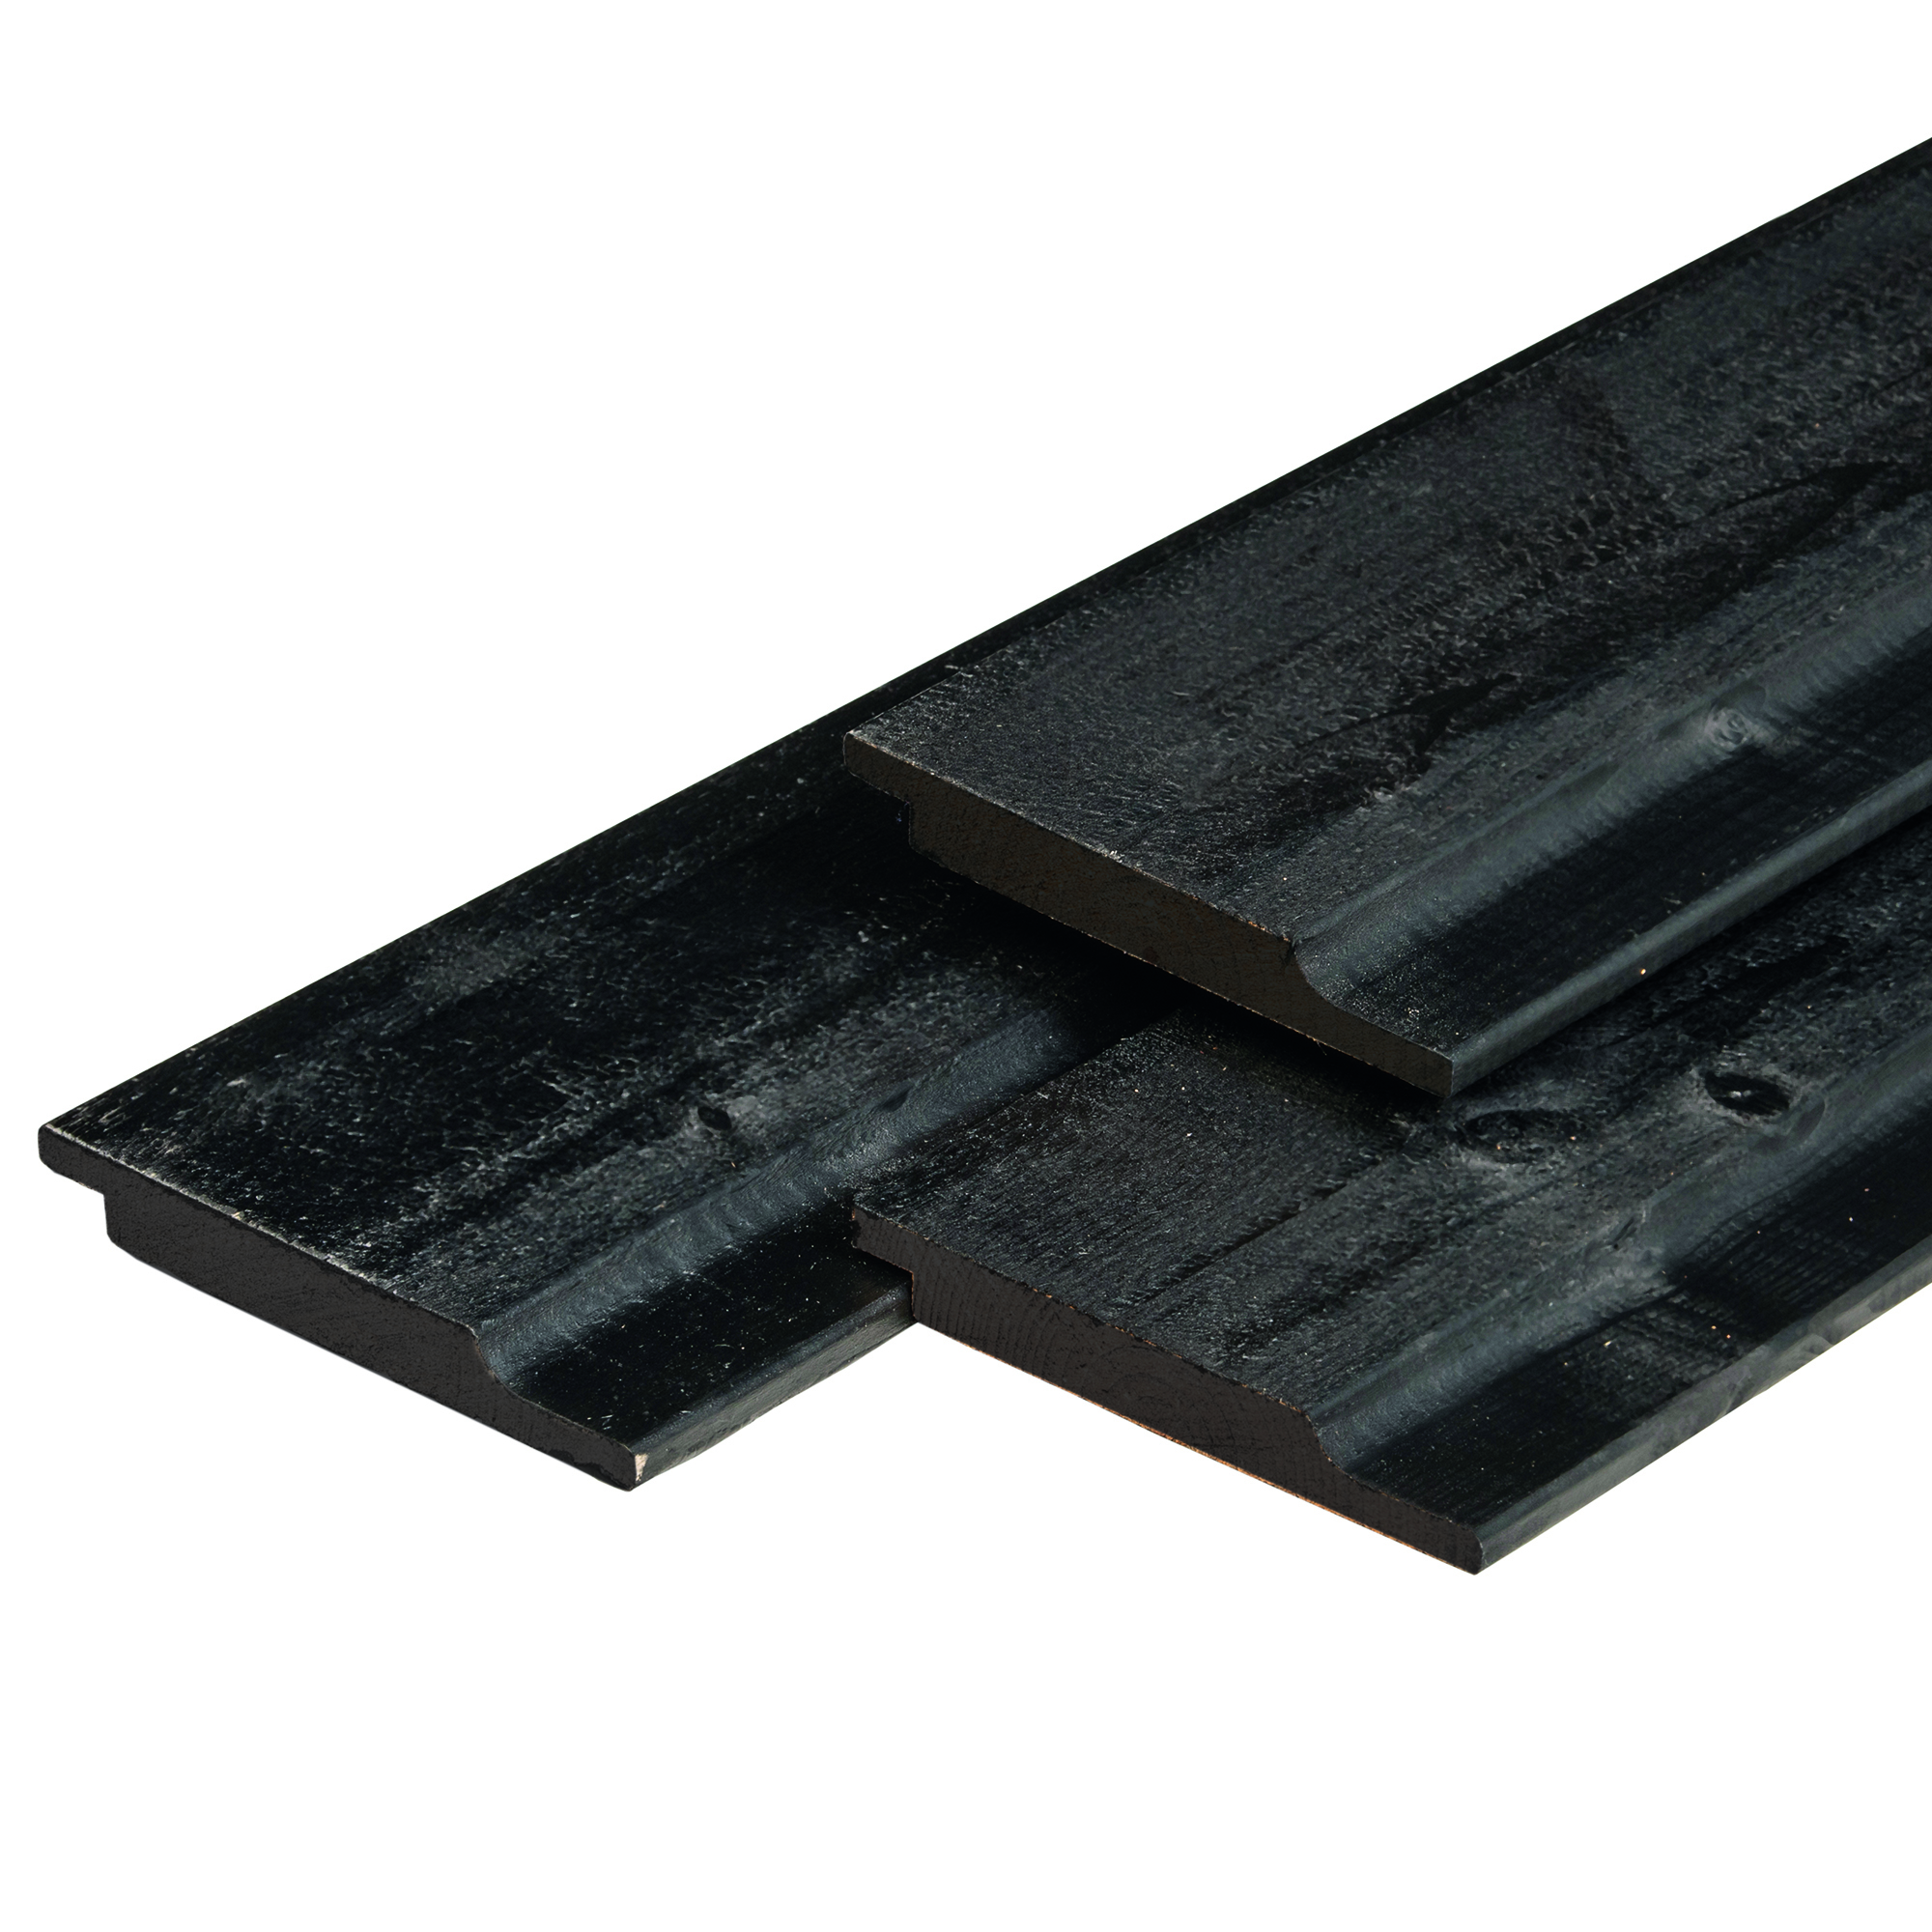 Profilholz mit Wechselfalz aus Nordeuropäische Fichtenholz, 1.9x14.5x300cm schwarz gespritzt